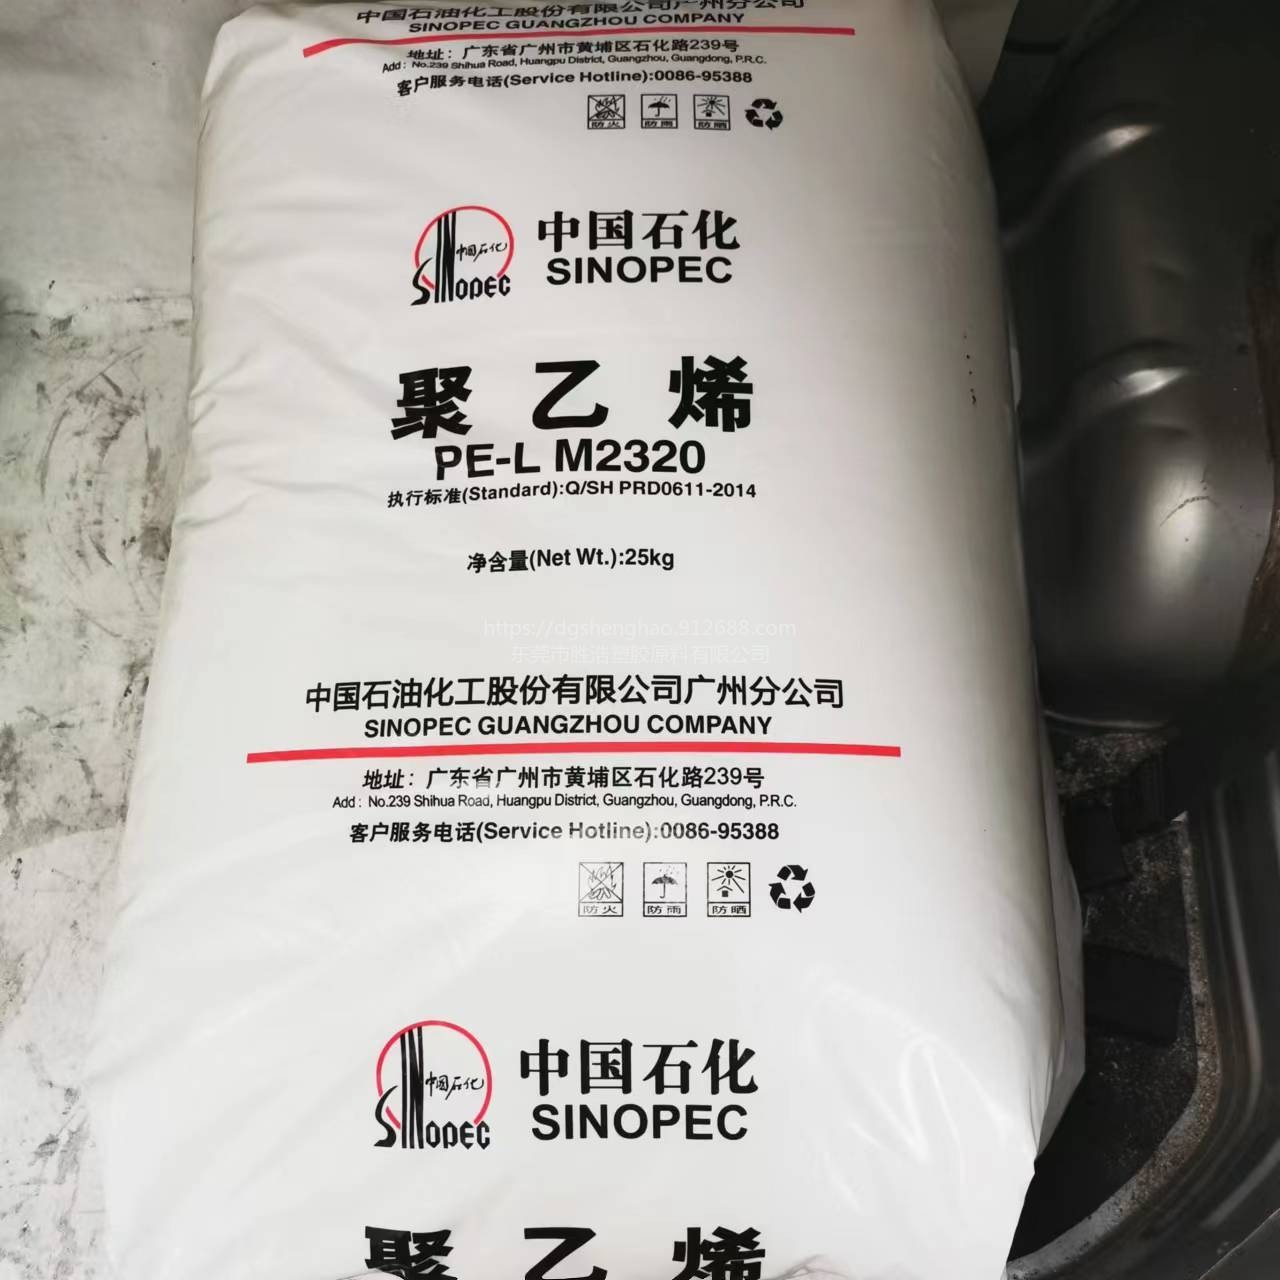 中国石化 聚乙烯  PE-L M2320 广州石化LLDPE  20个熔脂 旧型号FDA-7144  适用于注塑用品图片